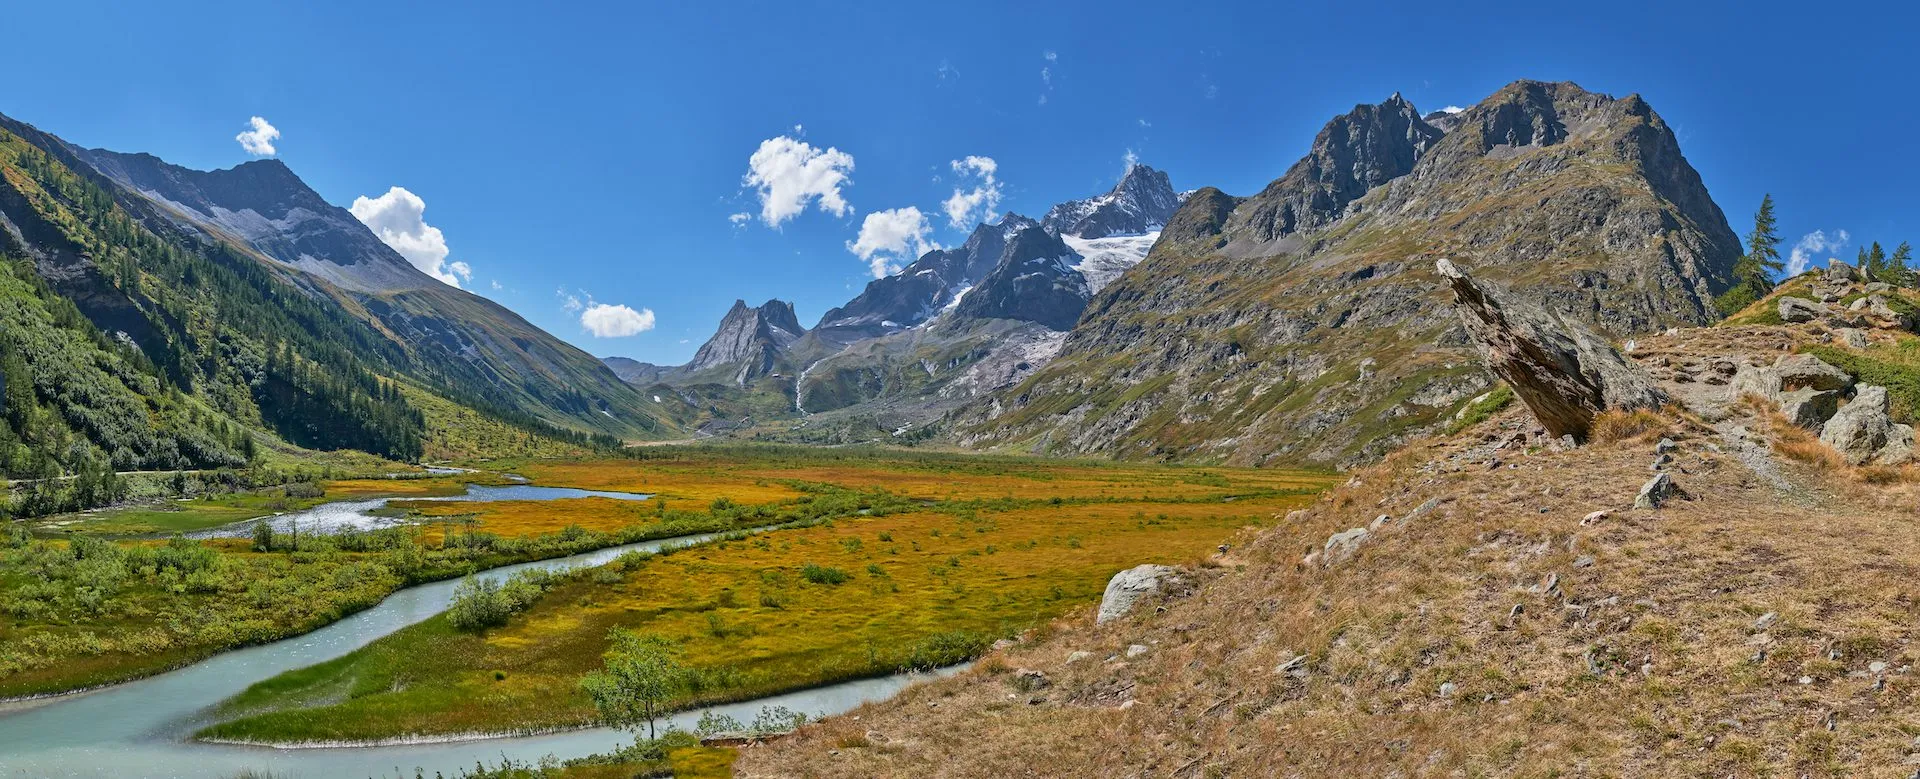 Naturskøn udsigt over de italienske alper fra Mont Blanc-massivet med Val Veny-dalen og Combal-søen